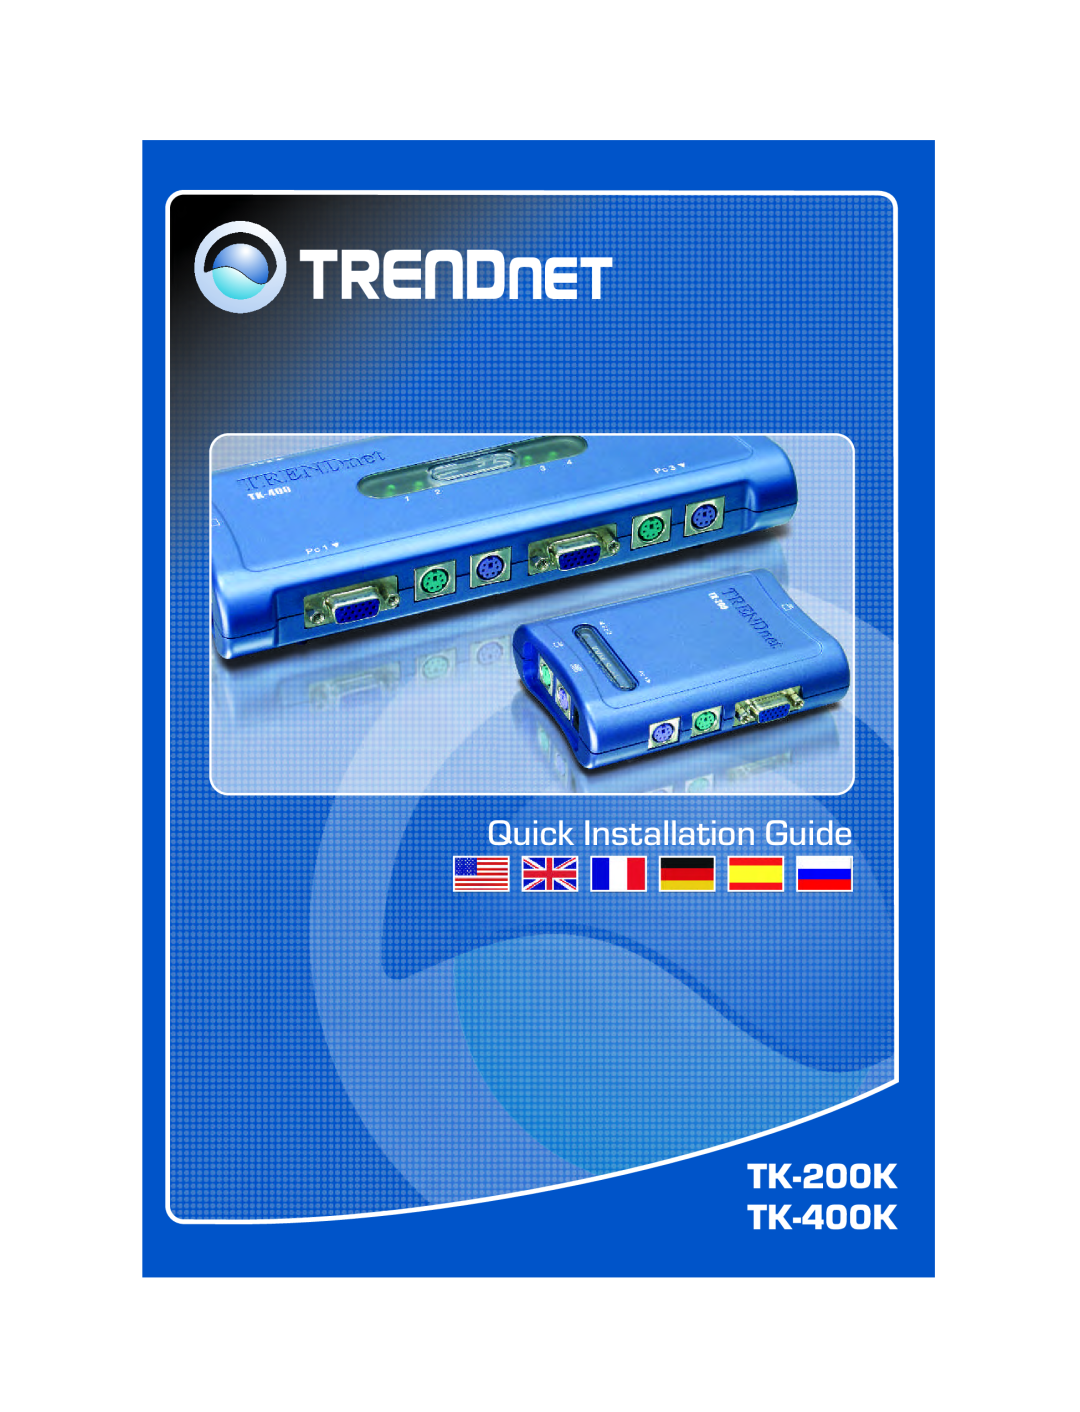 TRENDnet manual Quick Installation Guide, TK-200K TK-400K 